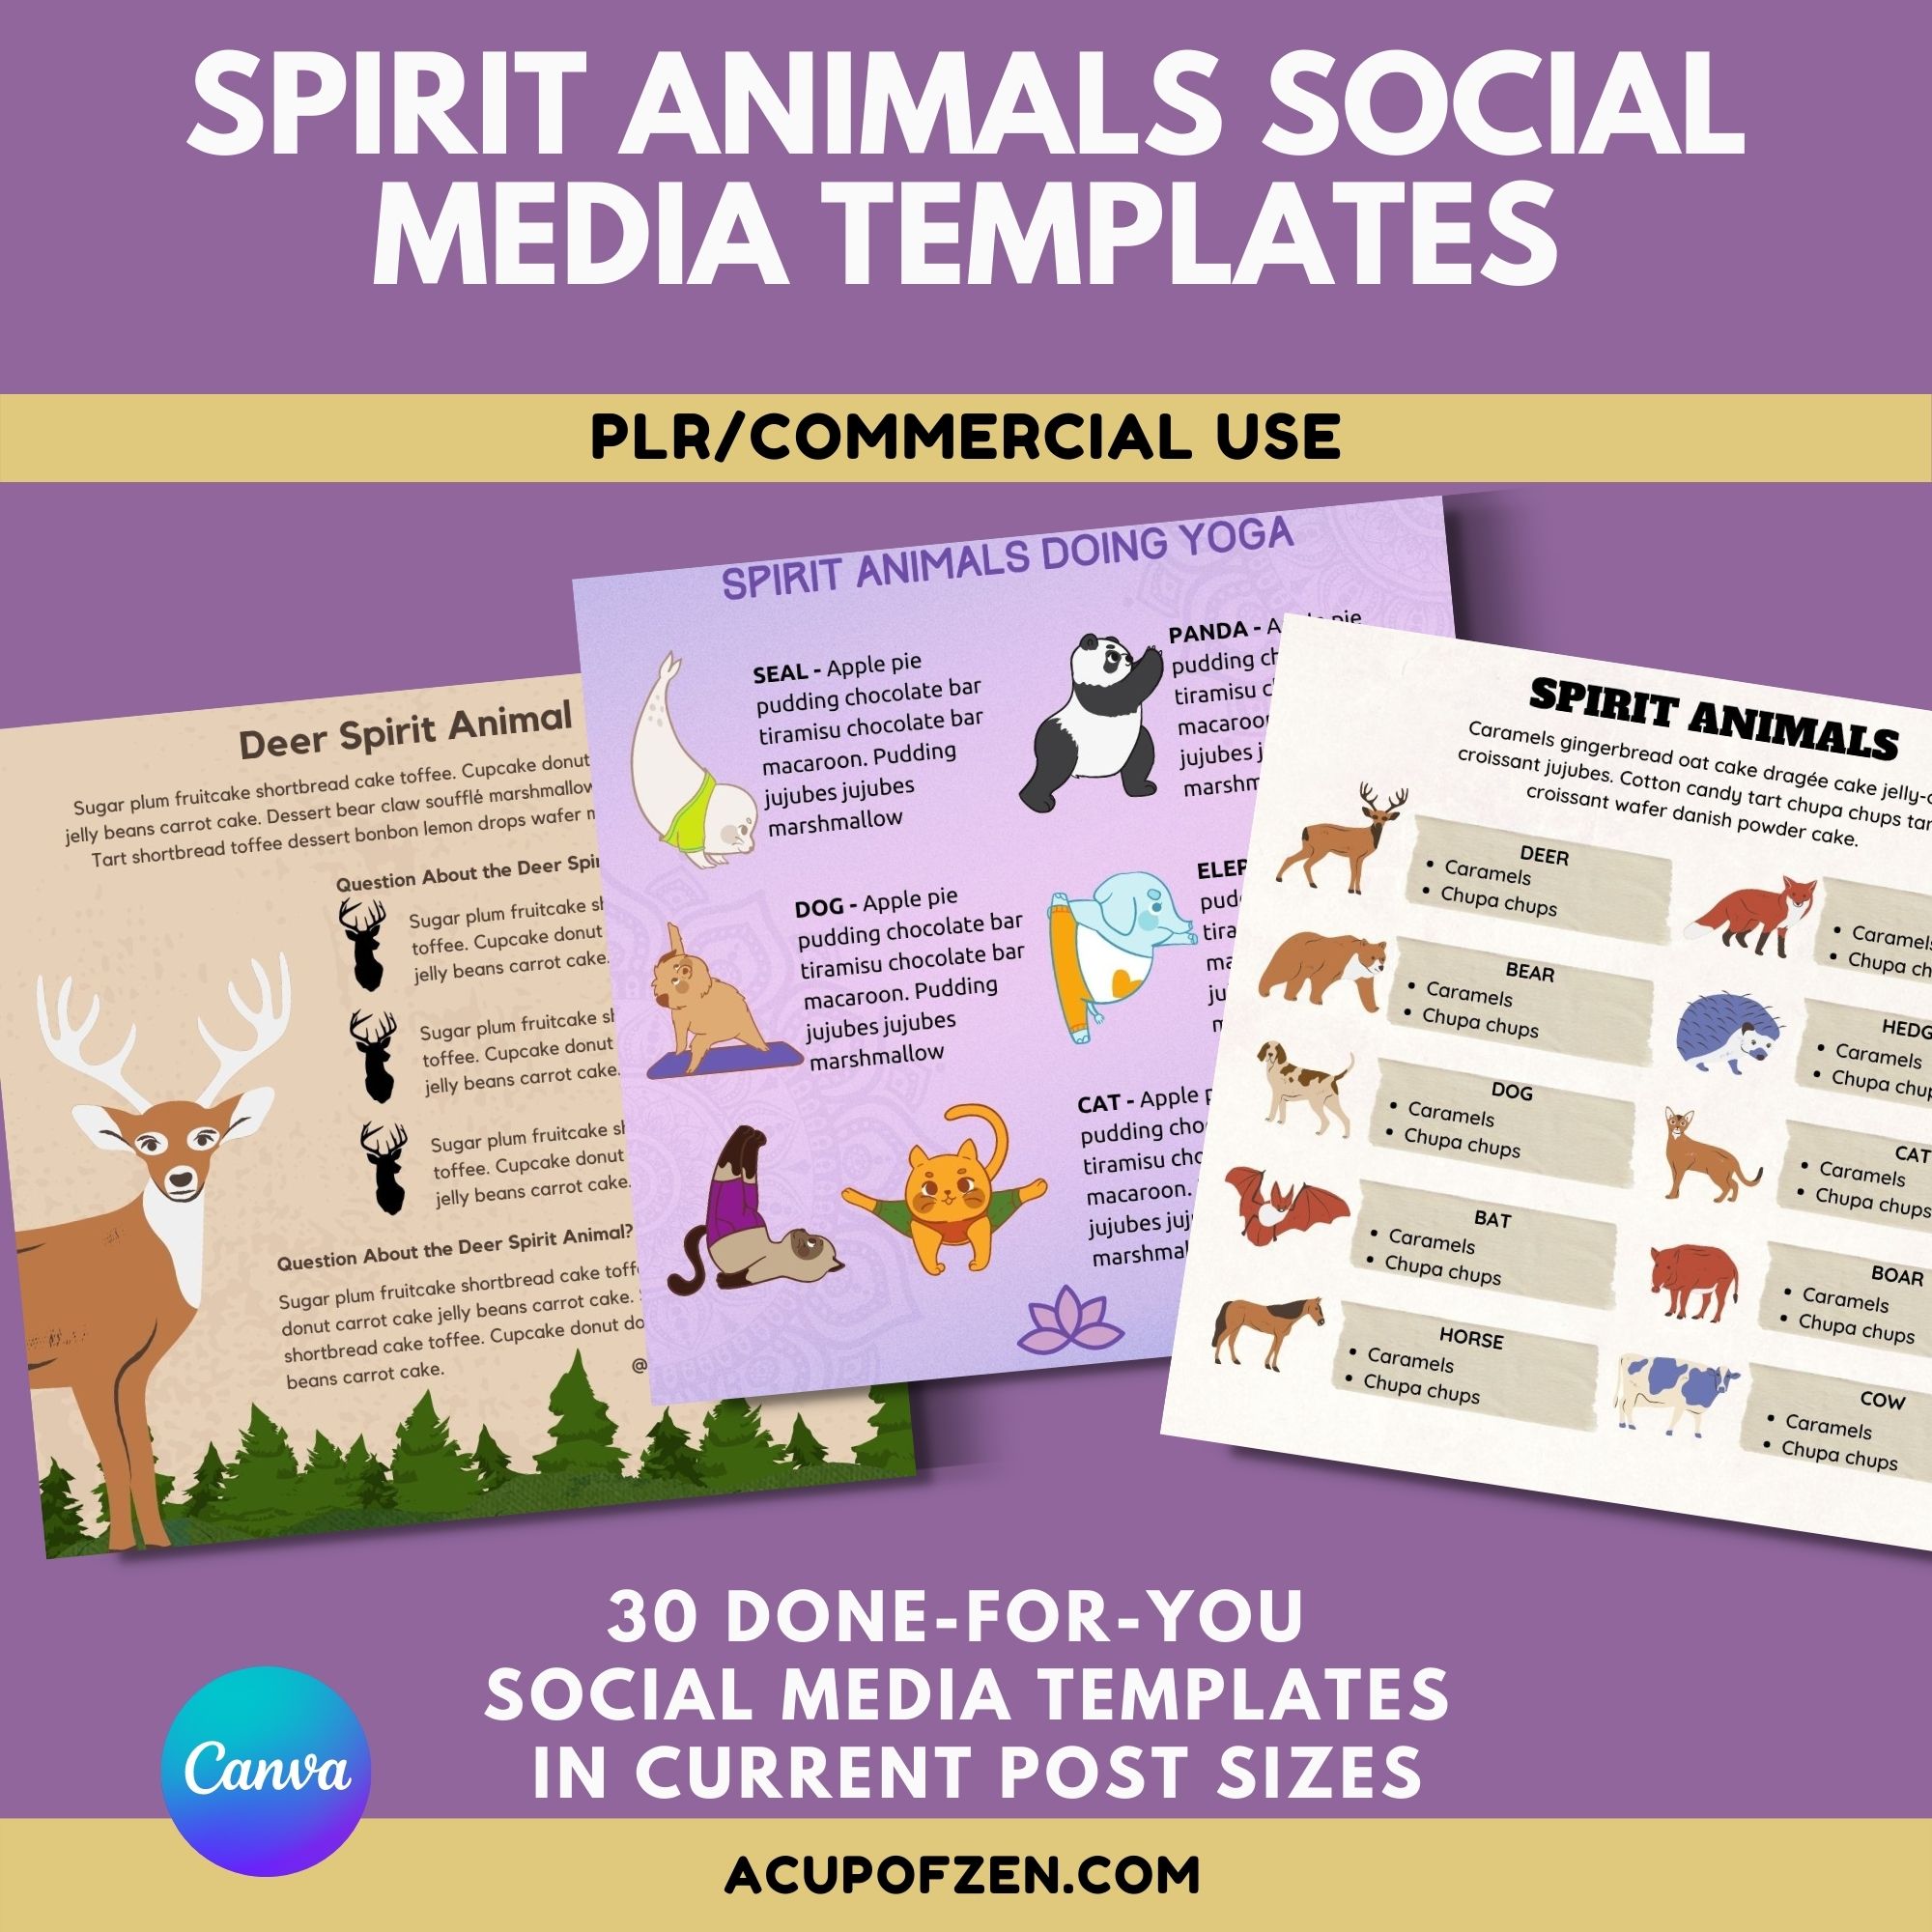 Spirit Animals Social Media Templates in Canva